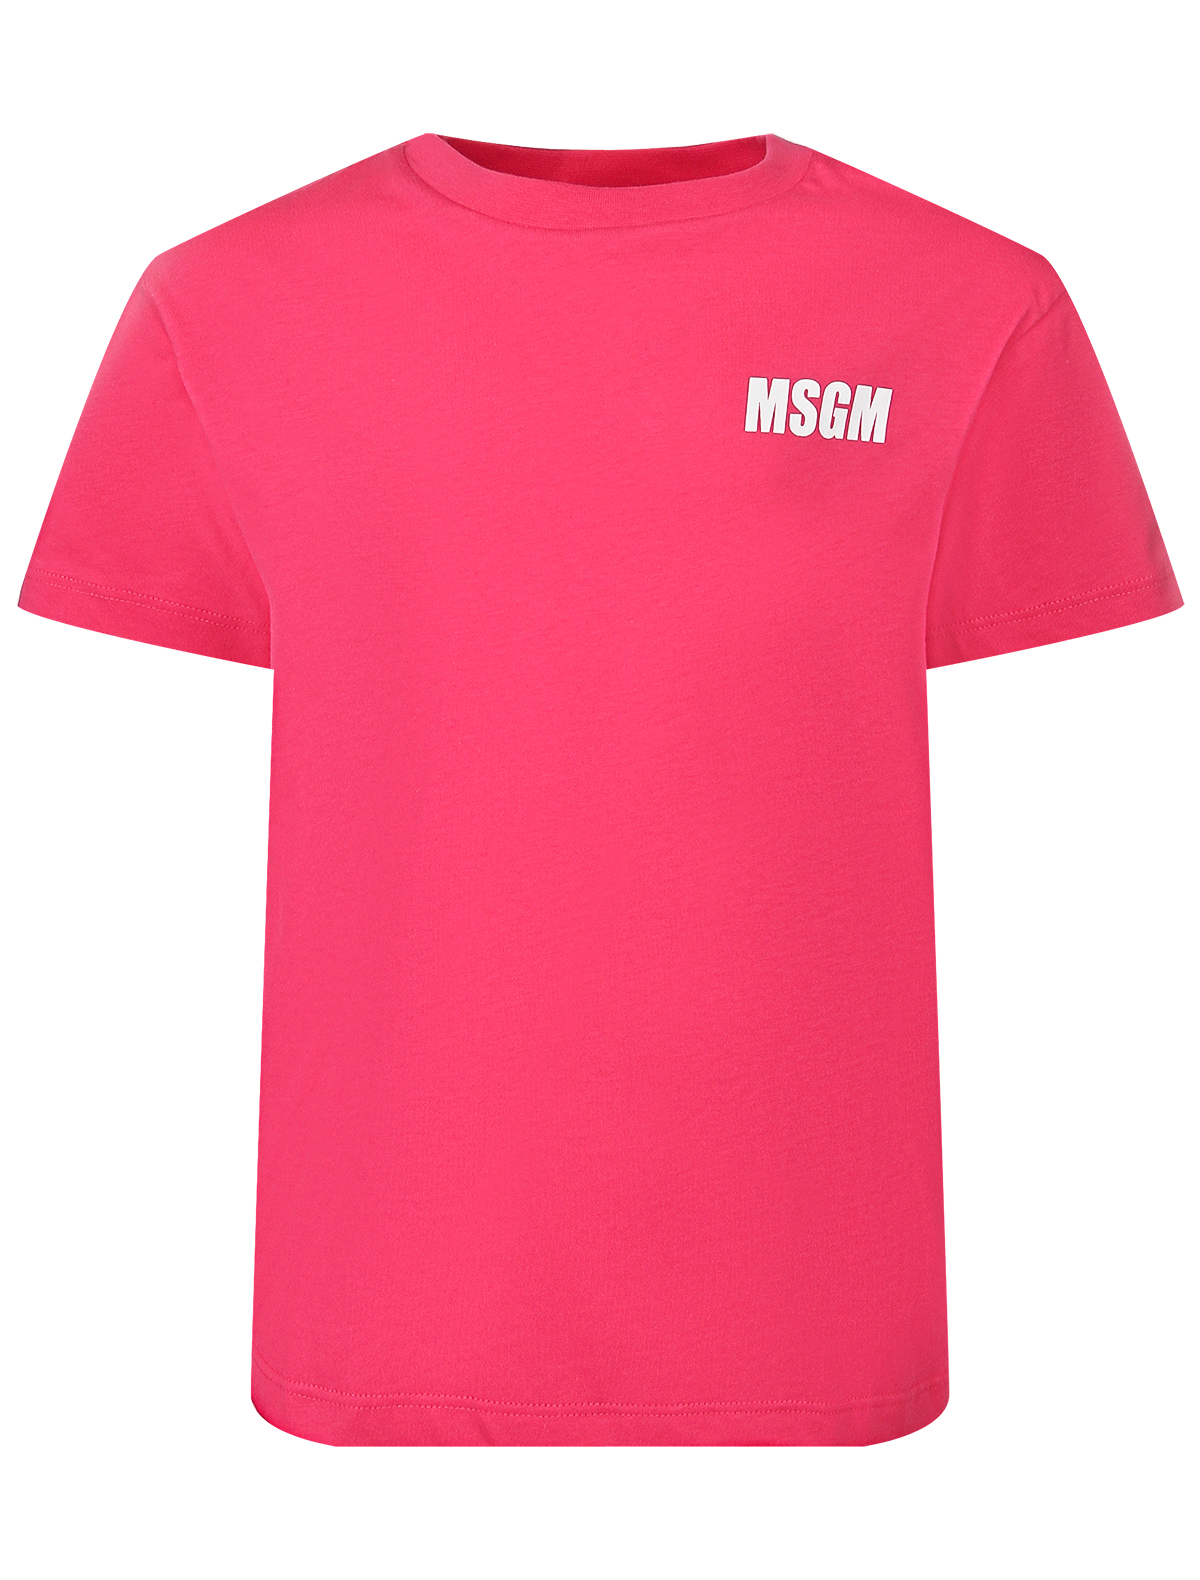 Футболка MSGM 2648562, цвет розовый, размер 13